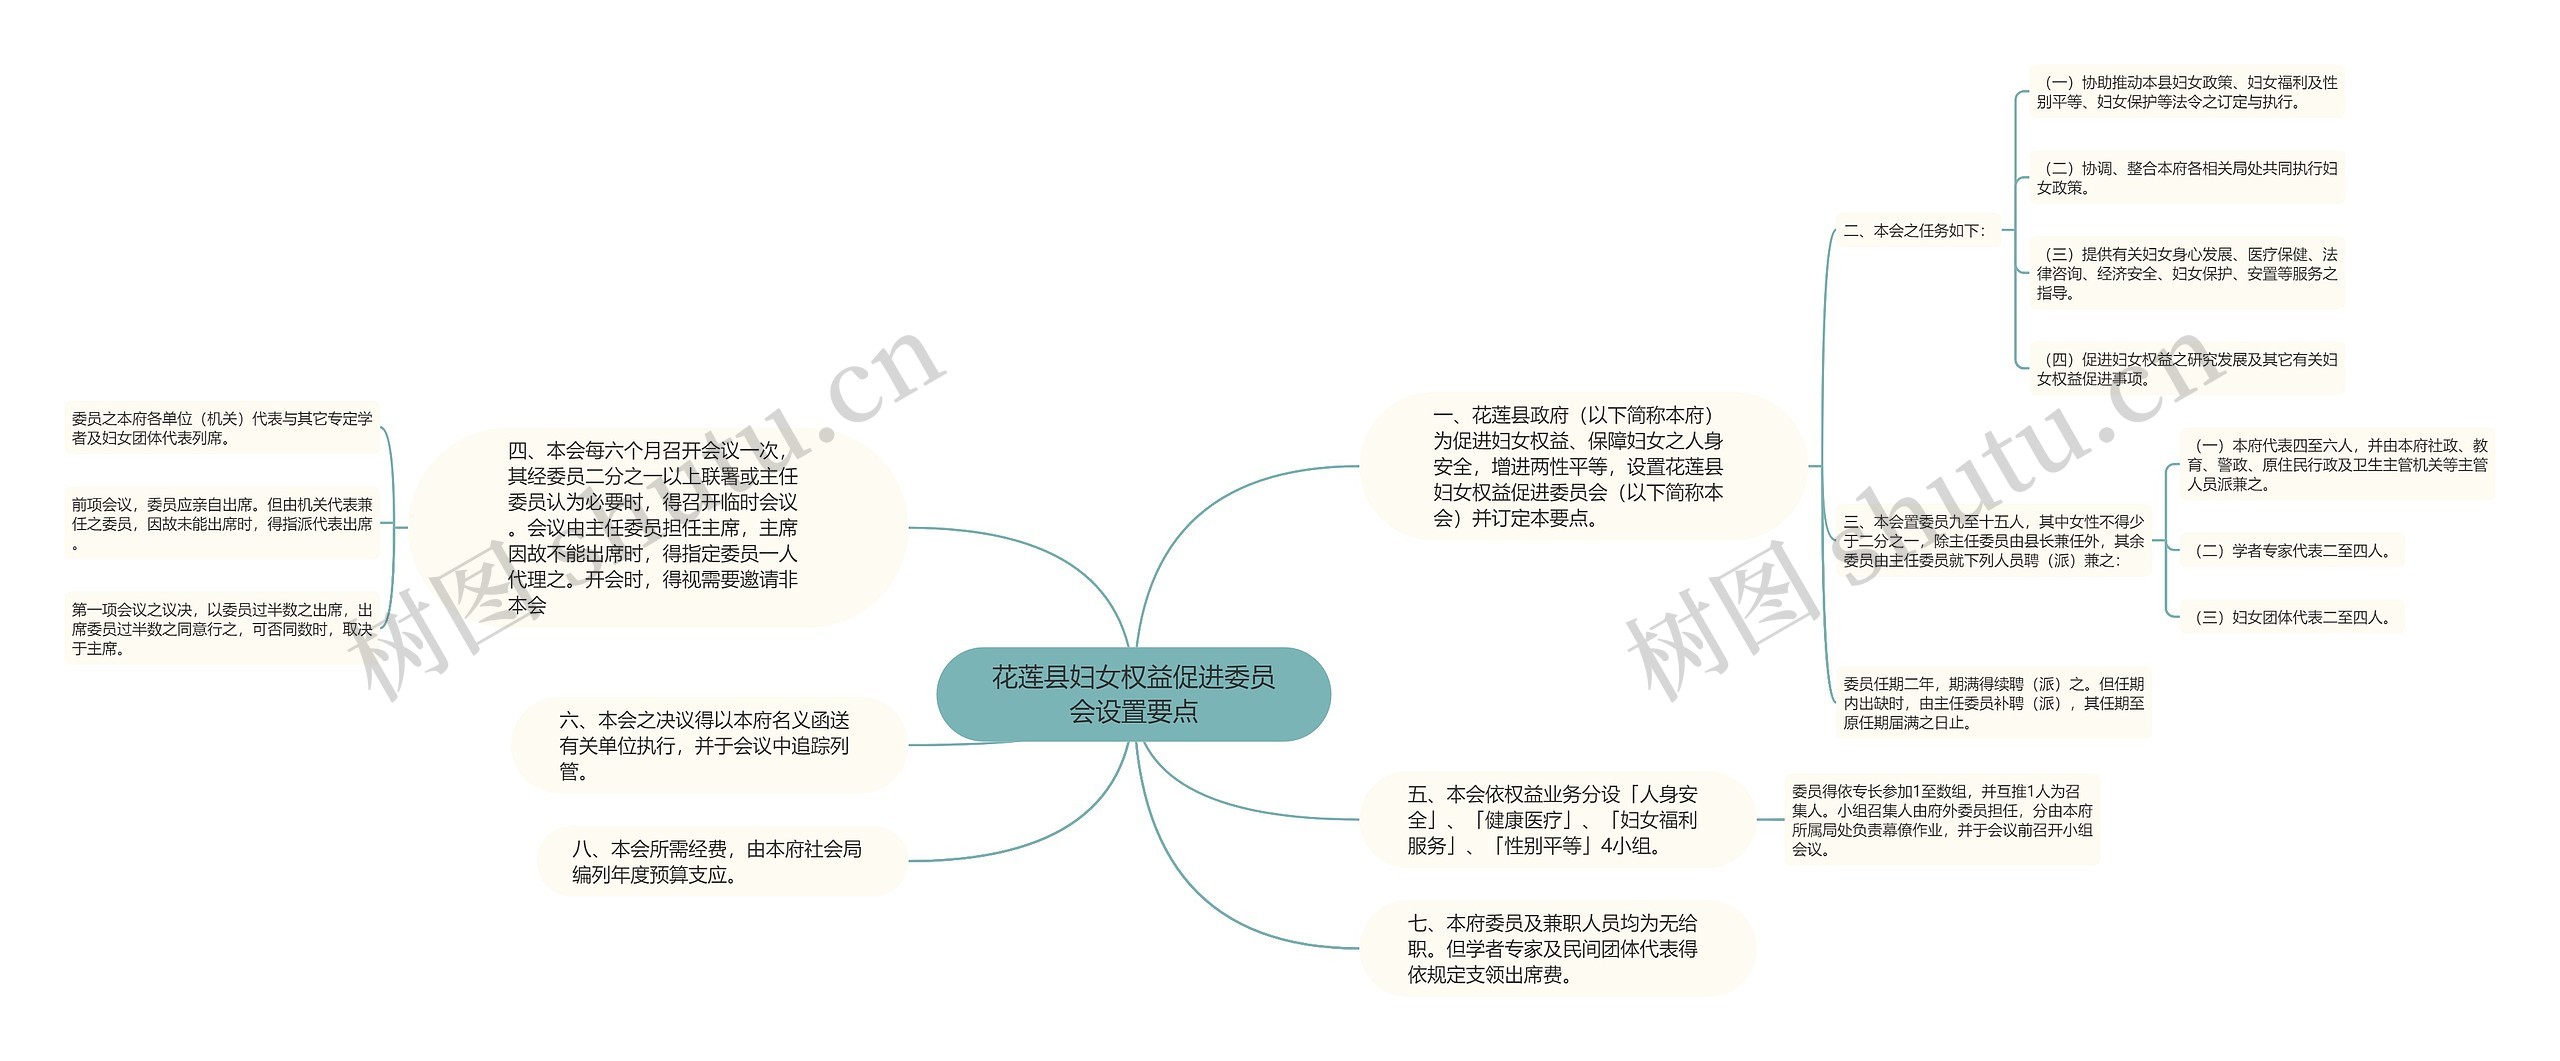 花莲县妇女权益促进委员会设置要点思维导图